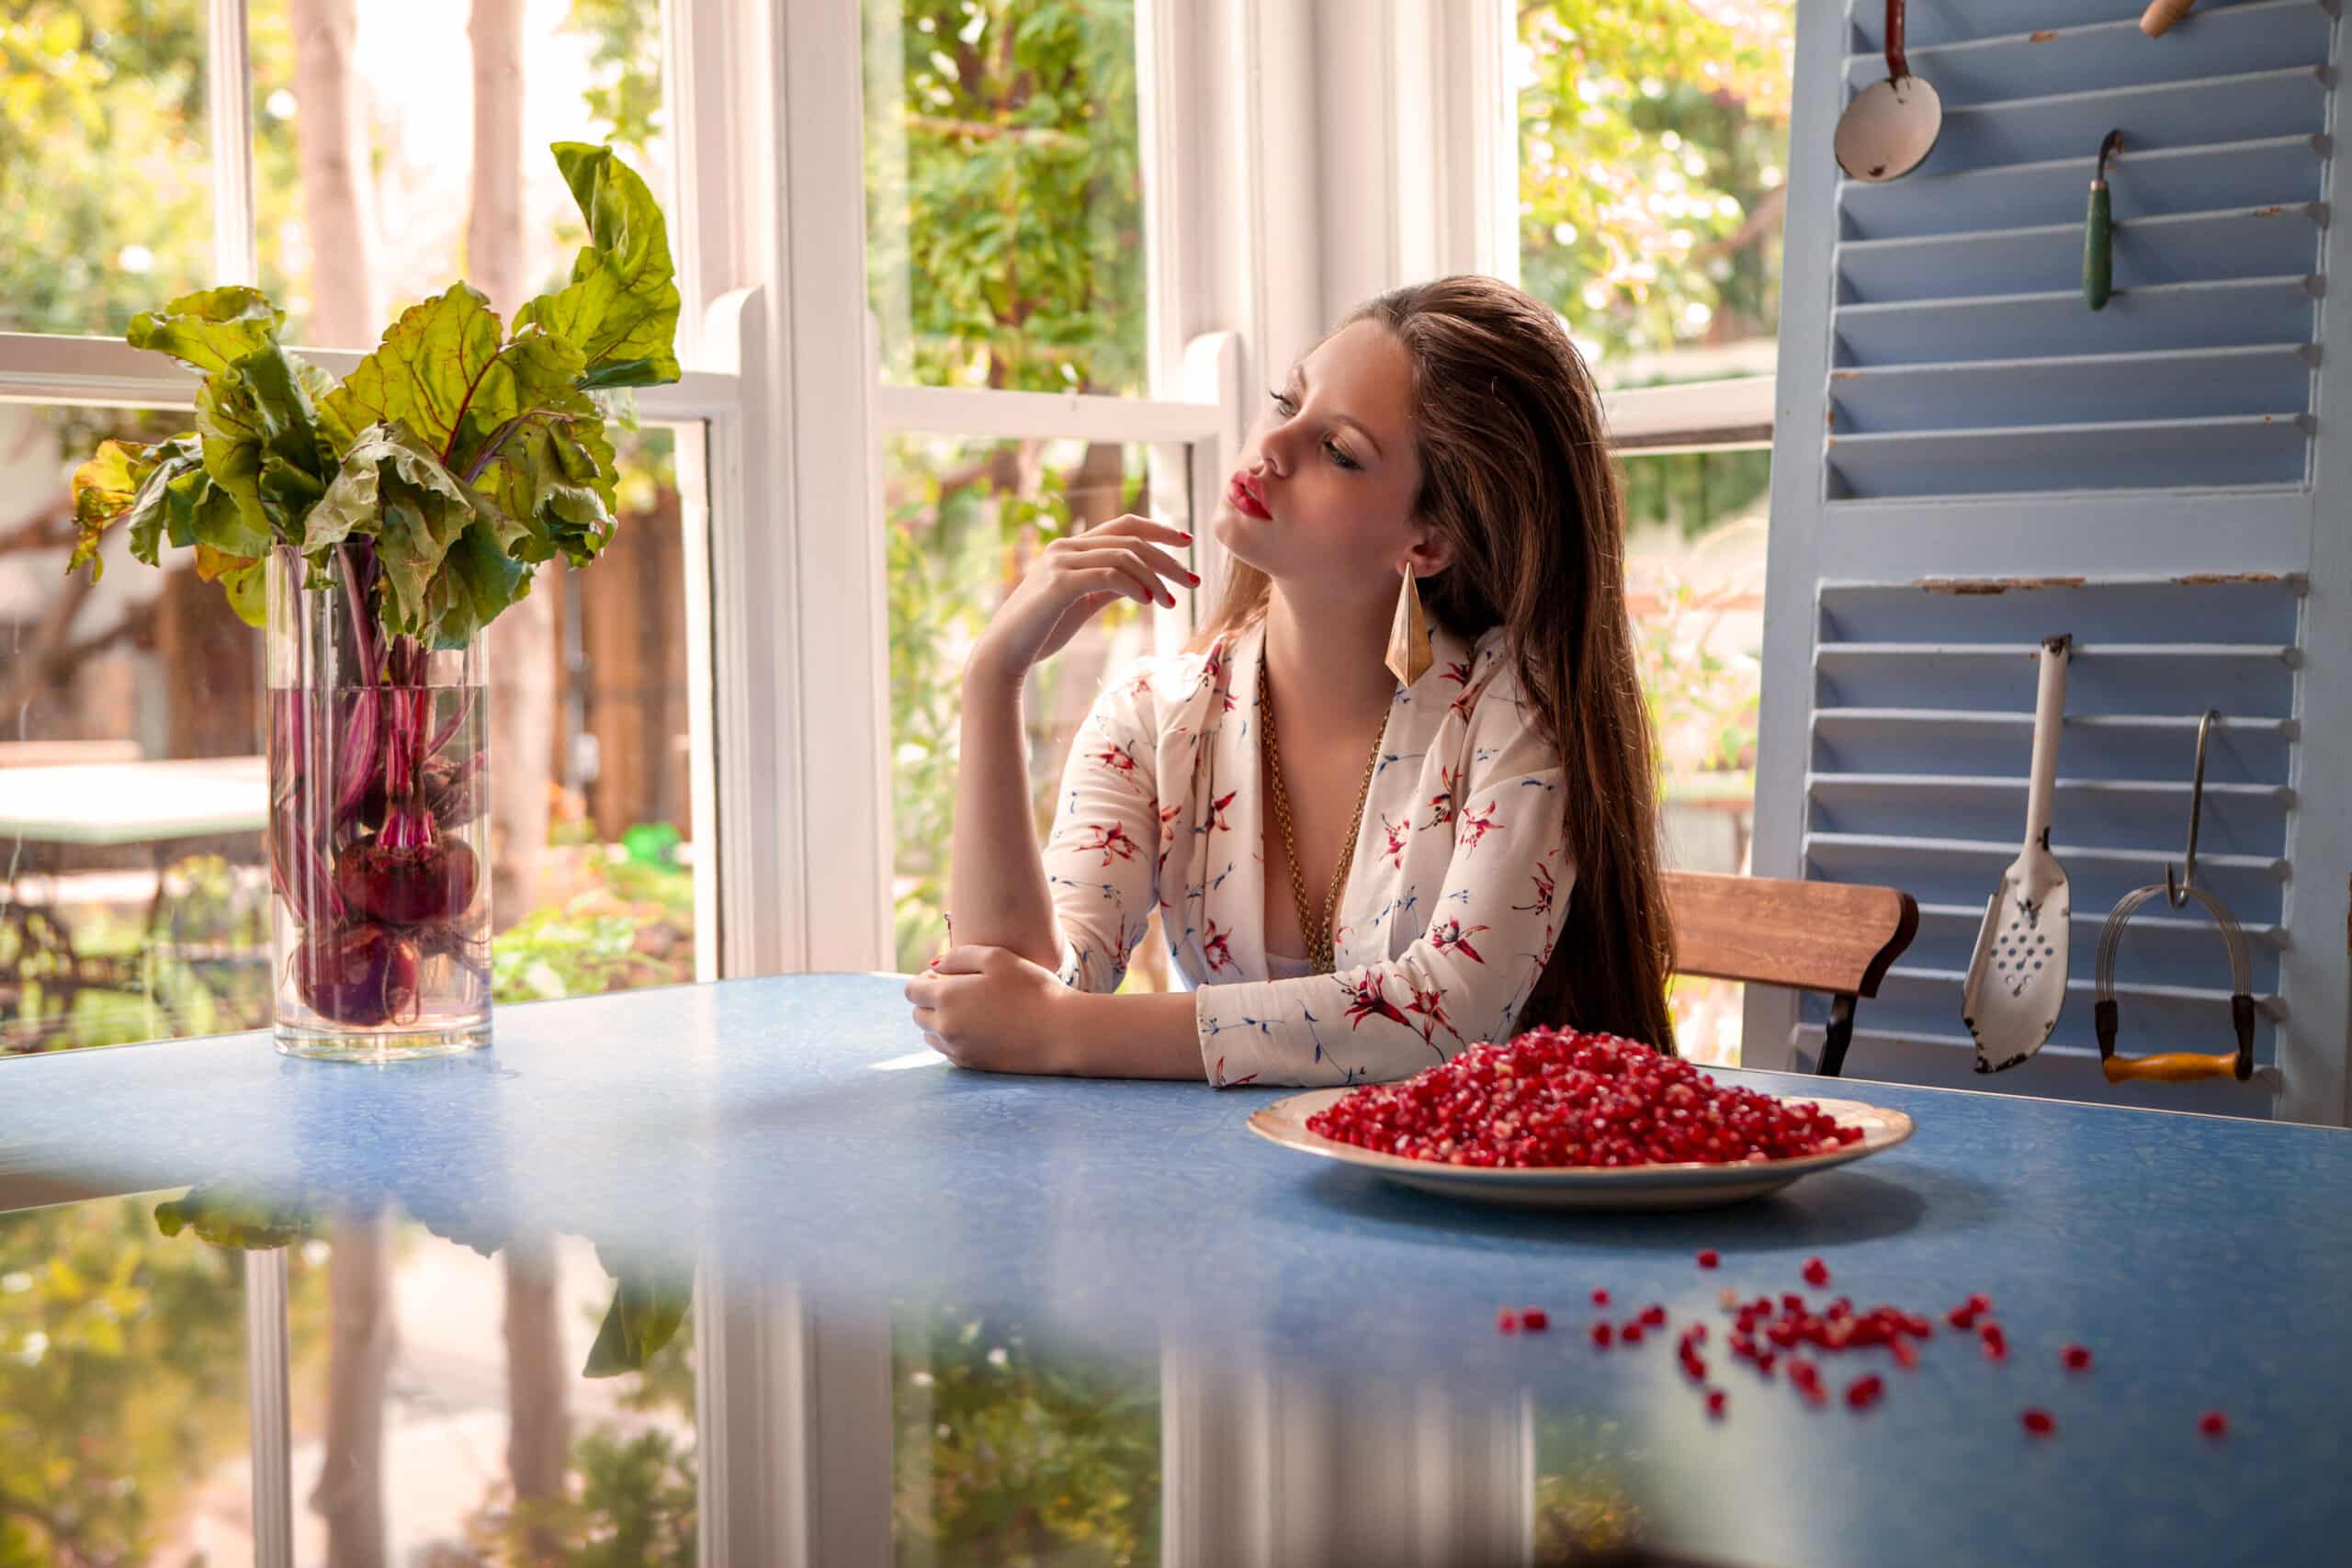 Eine Frau sitzt nachdenklich an einem Küchentisch am Fenster. Vor ihr steht ein Teller mit roten Johannisbeeren, auf dem Tisch sind verstreut Beeren verstreut, in einem gemütlichen, sonnendurchfluteten Raum. © Fotografie Tomas Rodriguez